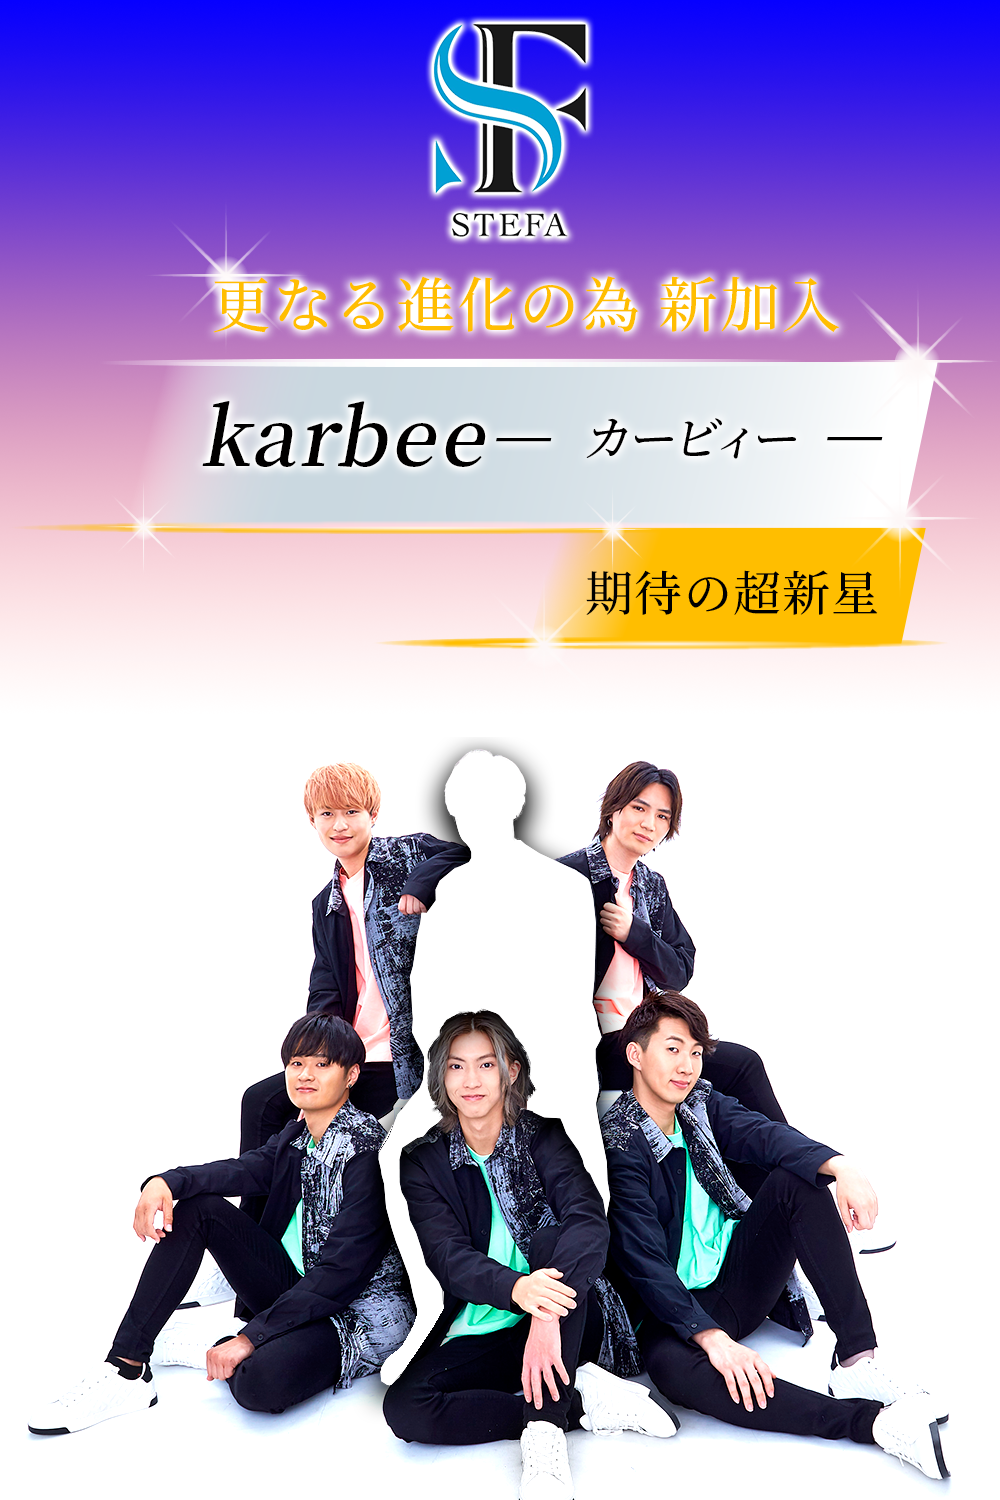 更なる進化の為 新加入 期待の超 新 星☆karbee☆『カービィー』